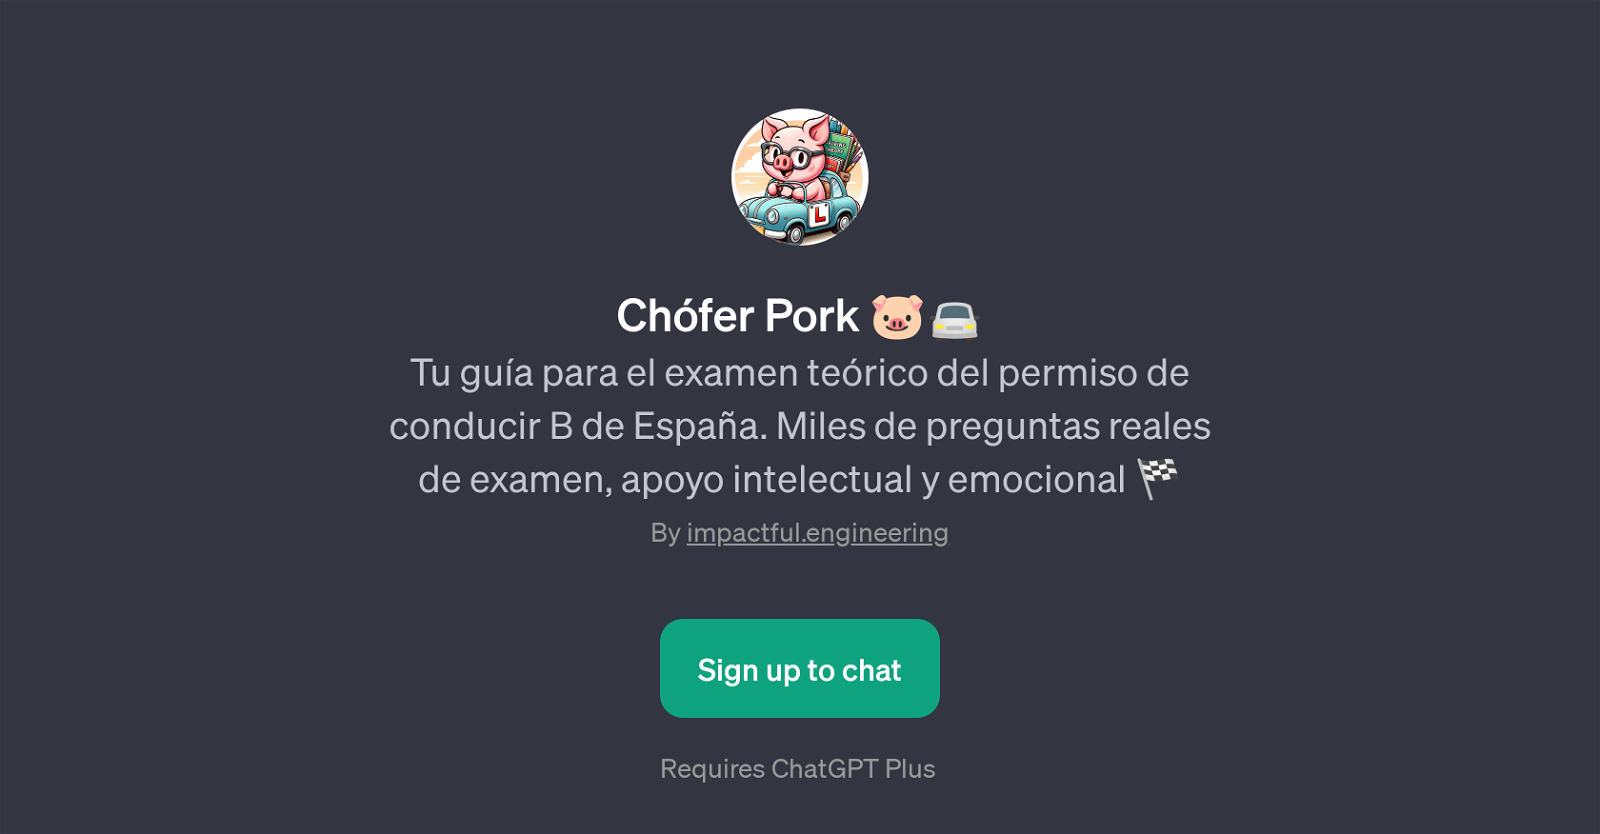 Chfer Pork website